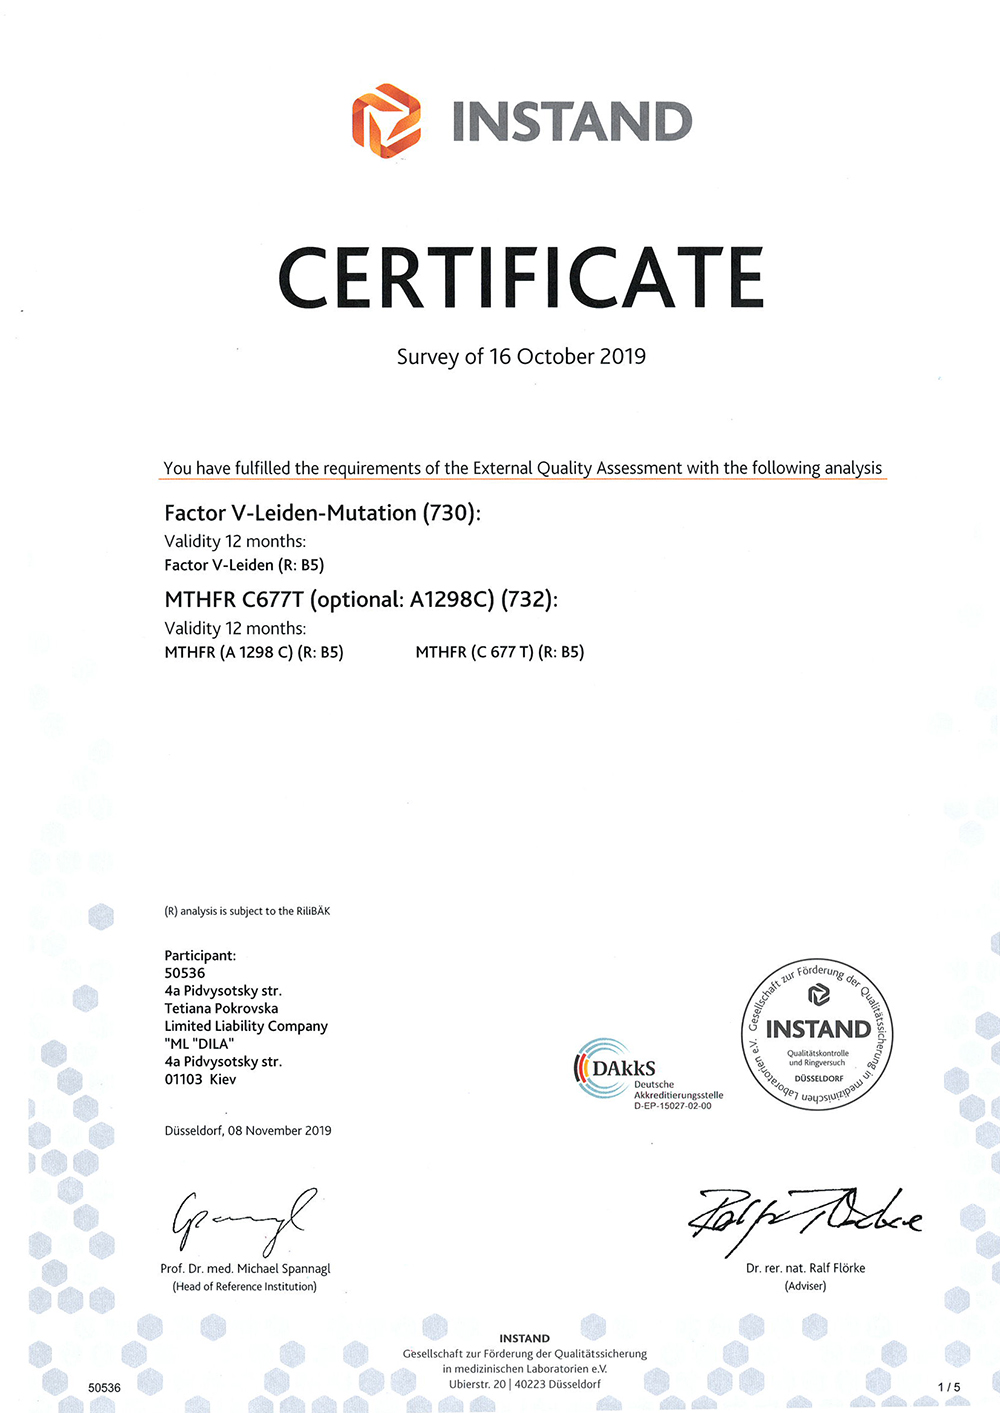 Фото - Сертифікат про успішне проходження зовнішньої оцінки якості за системою INSTAND e.v (Німеччина). Factor V-Leiden-Mutation, MTHFR C677T